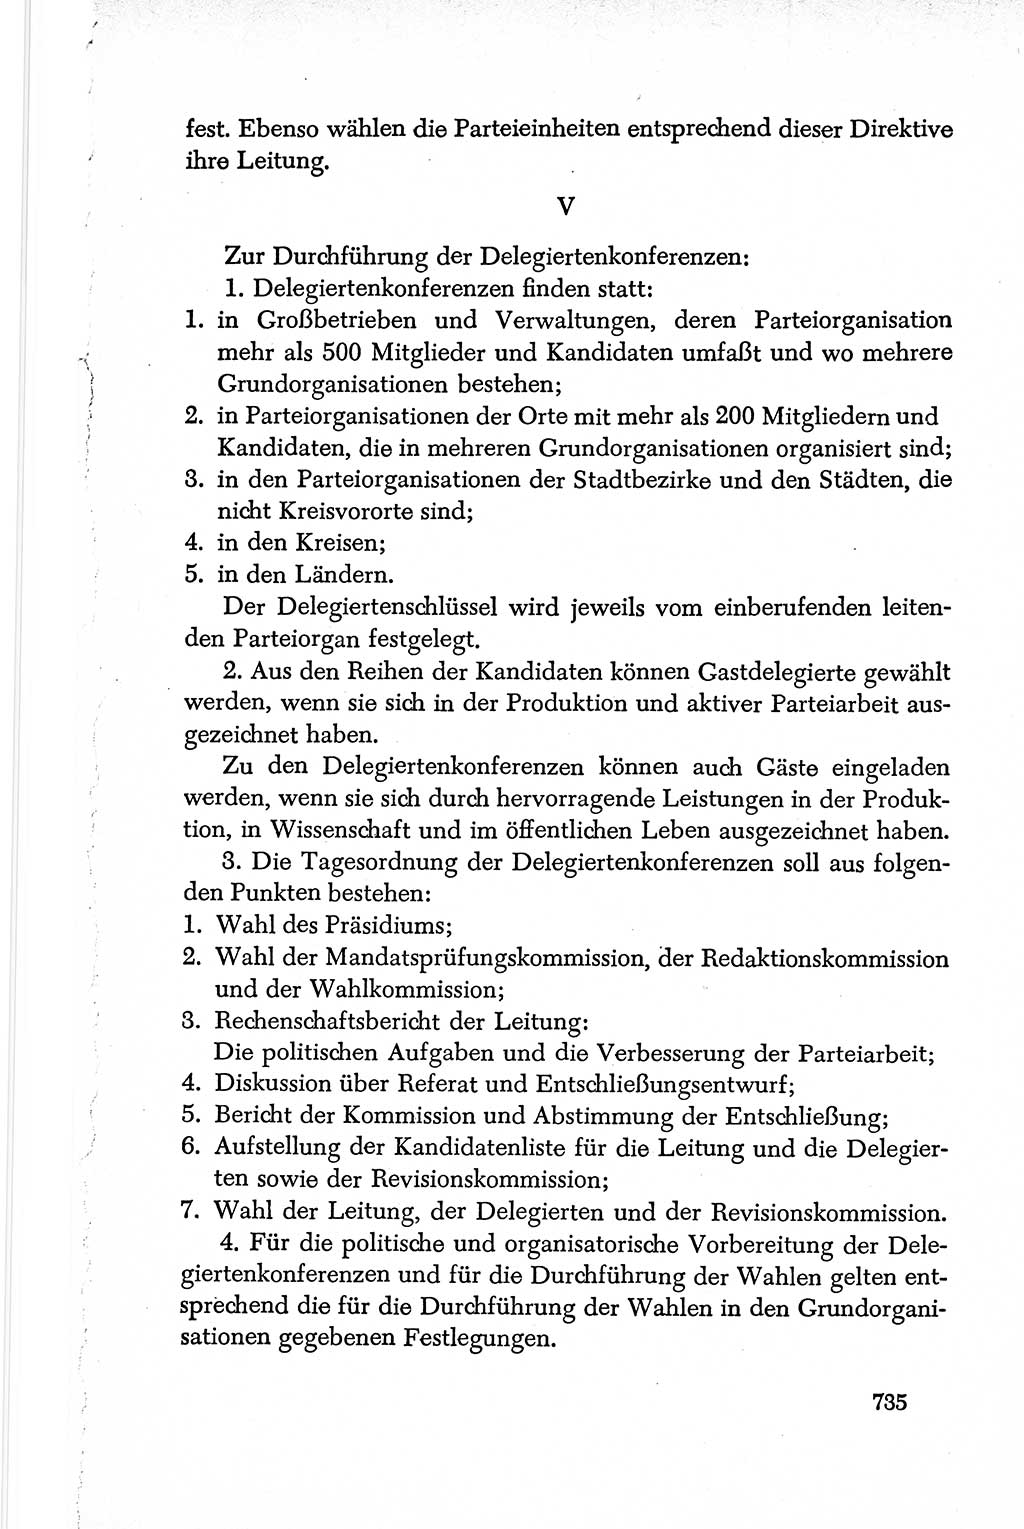 Dokumente der Sozialistischen Einheitspartei Deutschlands (SED) [Deutsche Demokratische Republik (DDR)] 1950-1952, Seite 735 (Dok. SED DDR 1950-1952, S. 735)